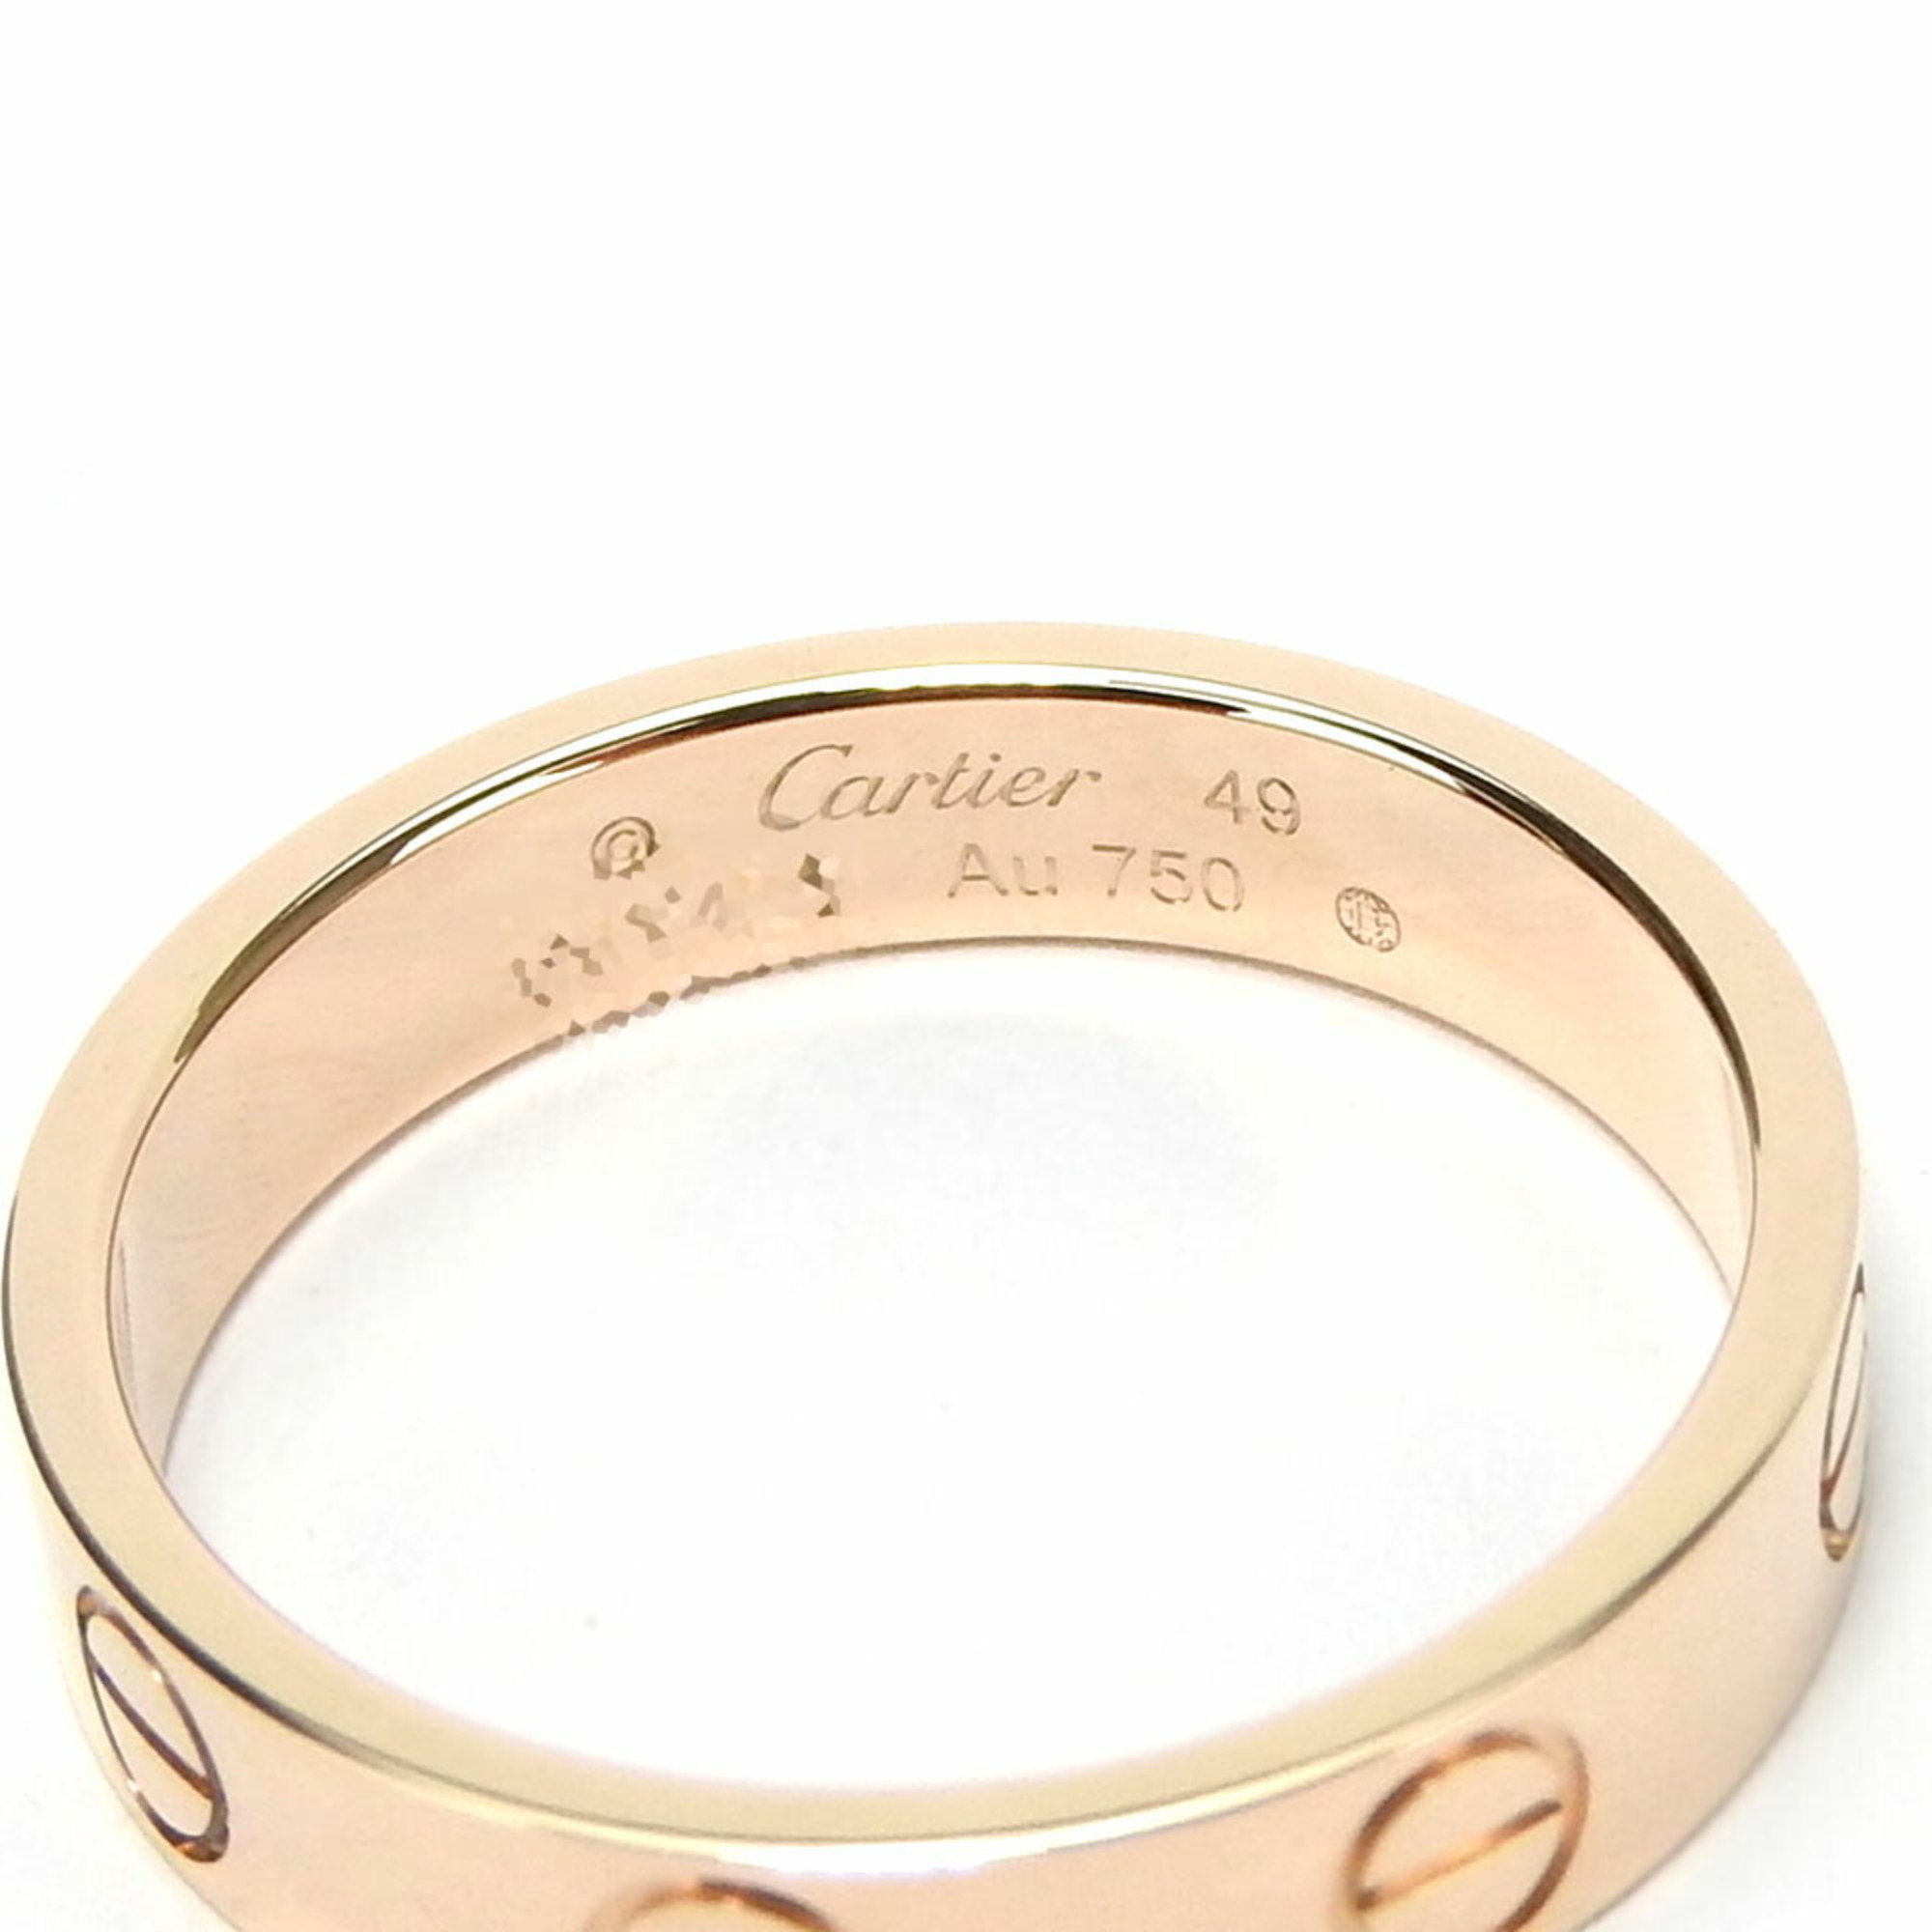 Cartier Ring Love 49 K18PG approx. 3.0g Pink Gold Women's CARTIER